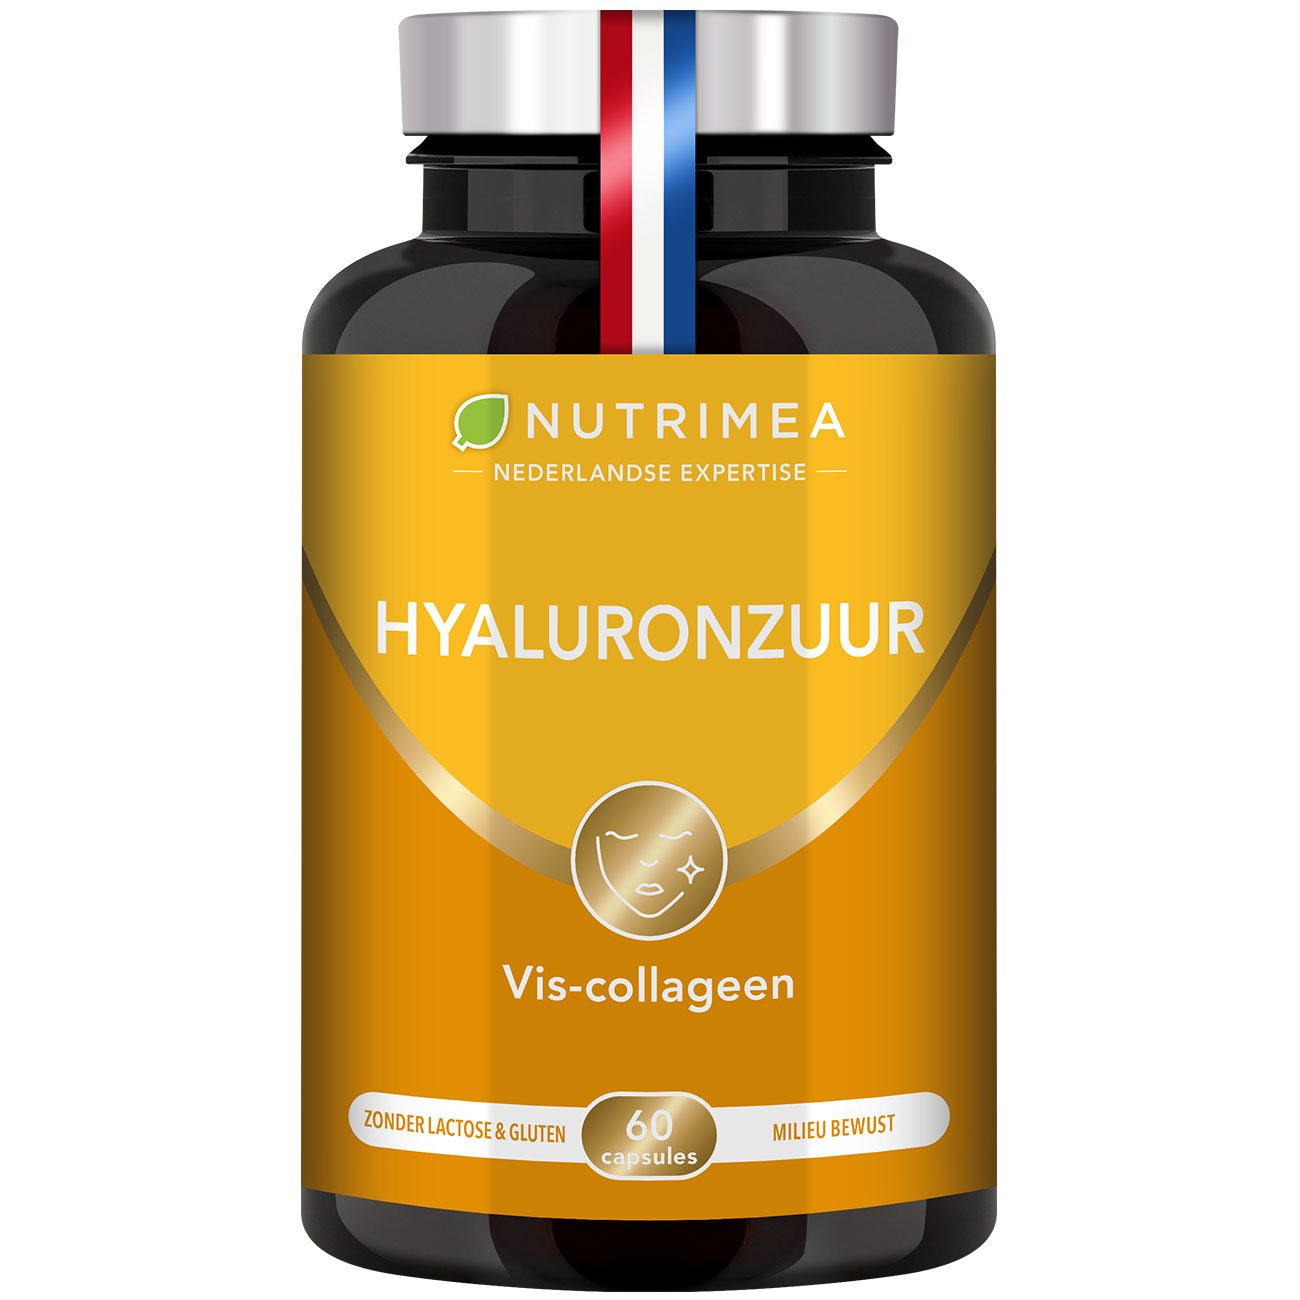 Foto van het voedingssupplement Hyaluronzuur en Collageen